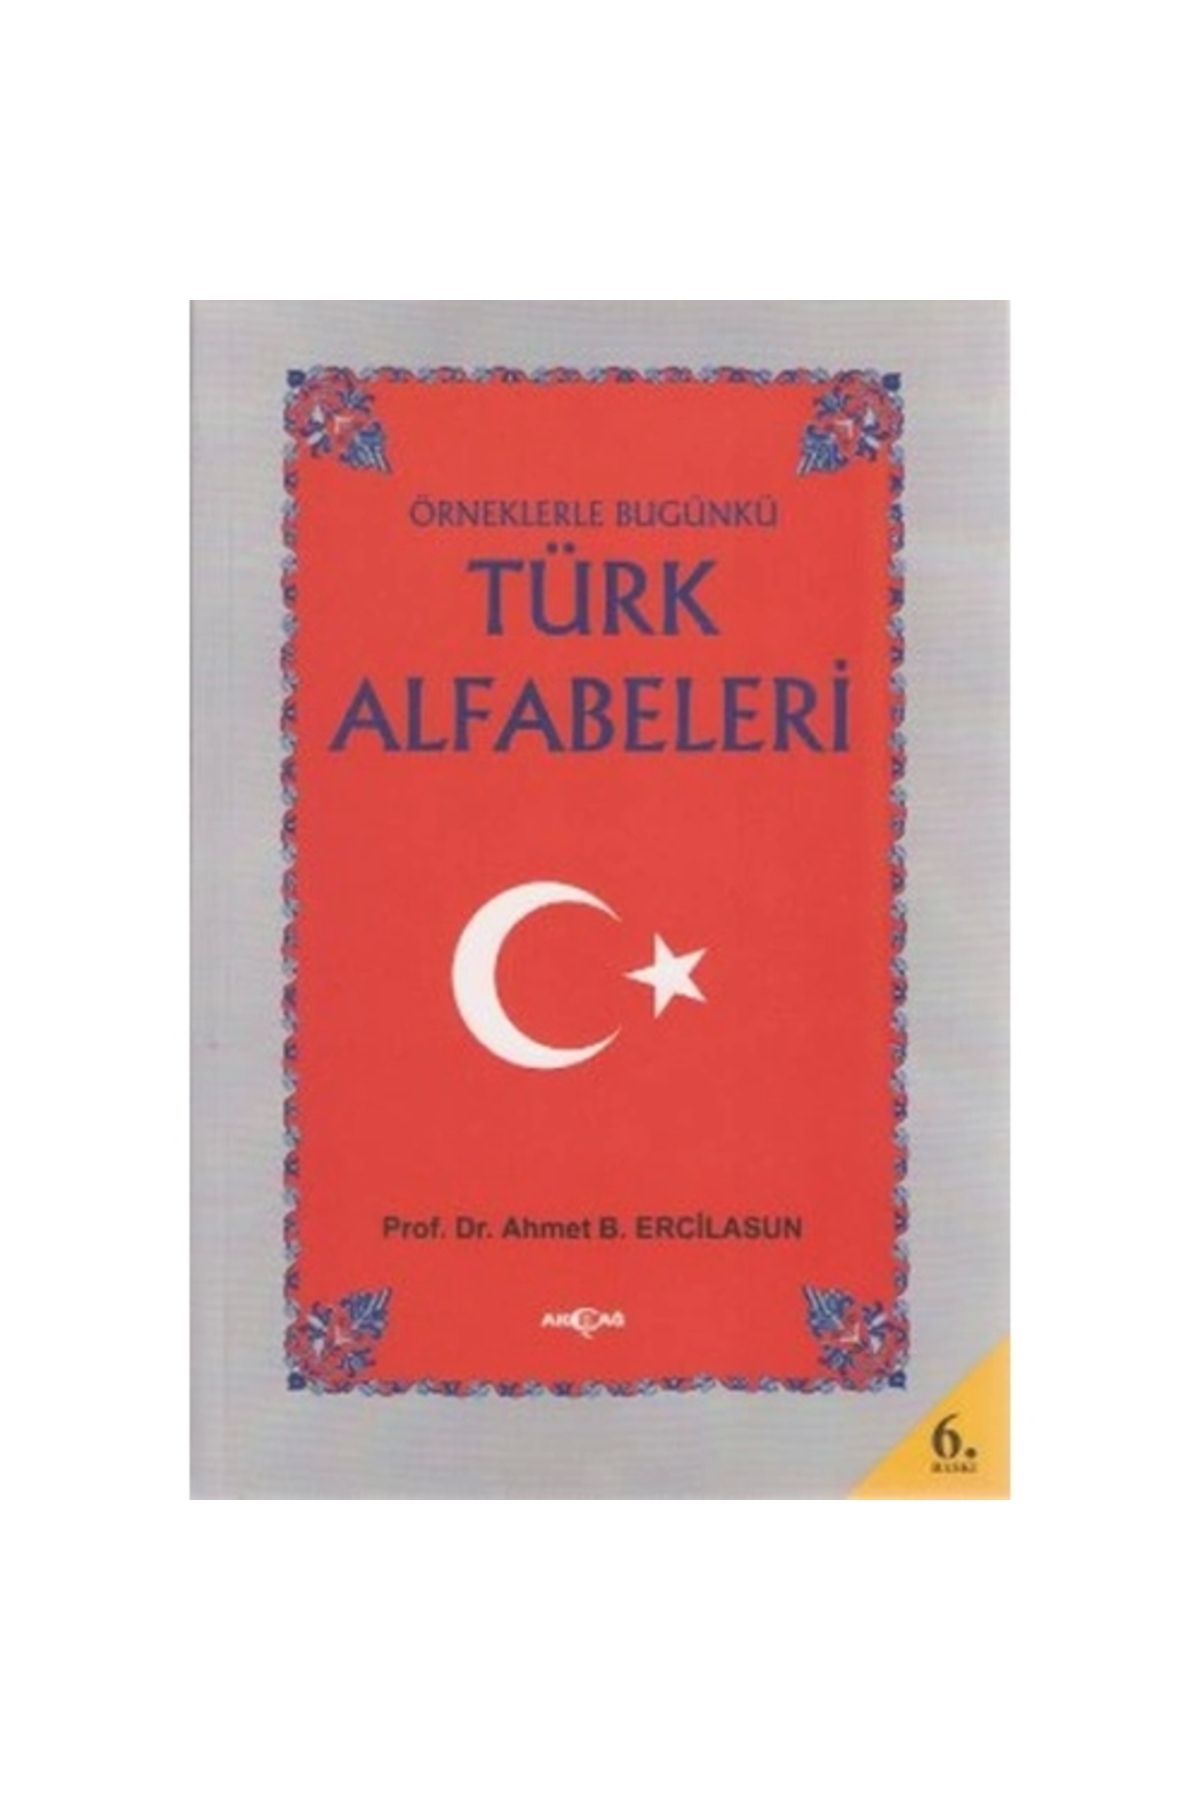 Akçağ Yayınları Örneklerle Bugünkü Türk Alfabeleri